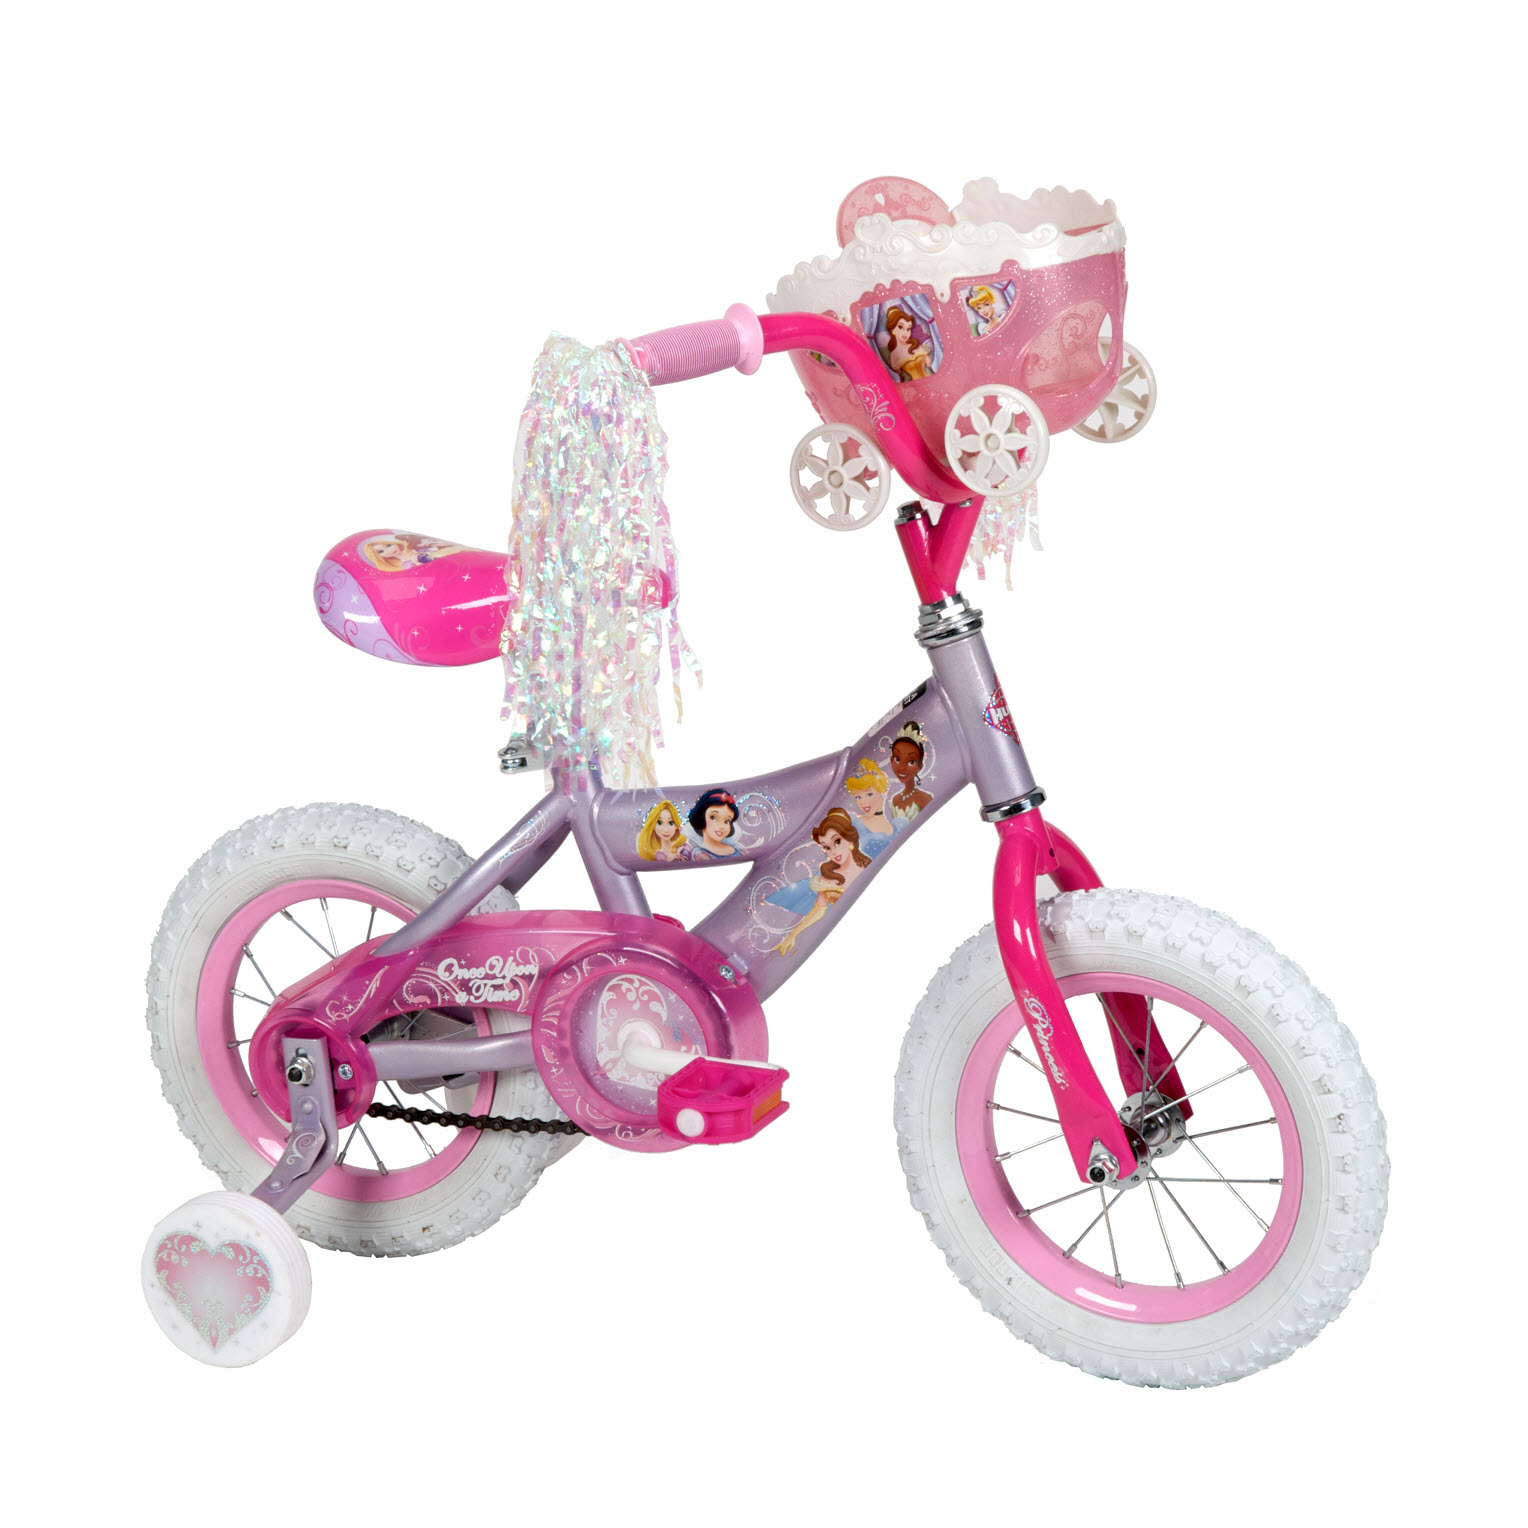 Disney K2453 12" Girls Princess Bike Sears Outlet